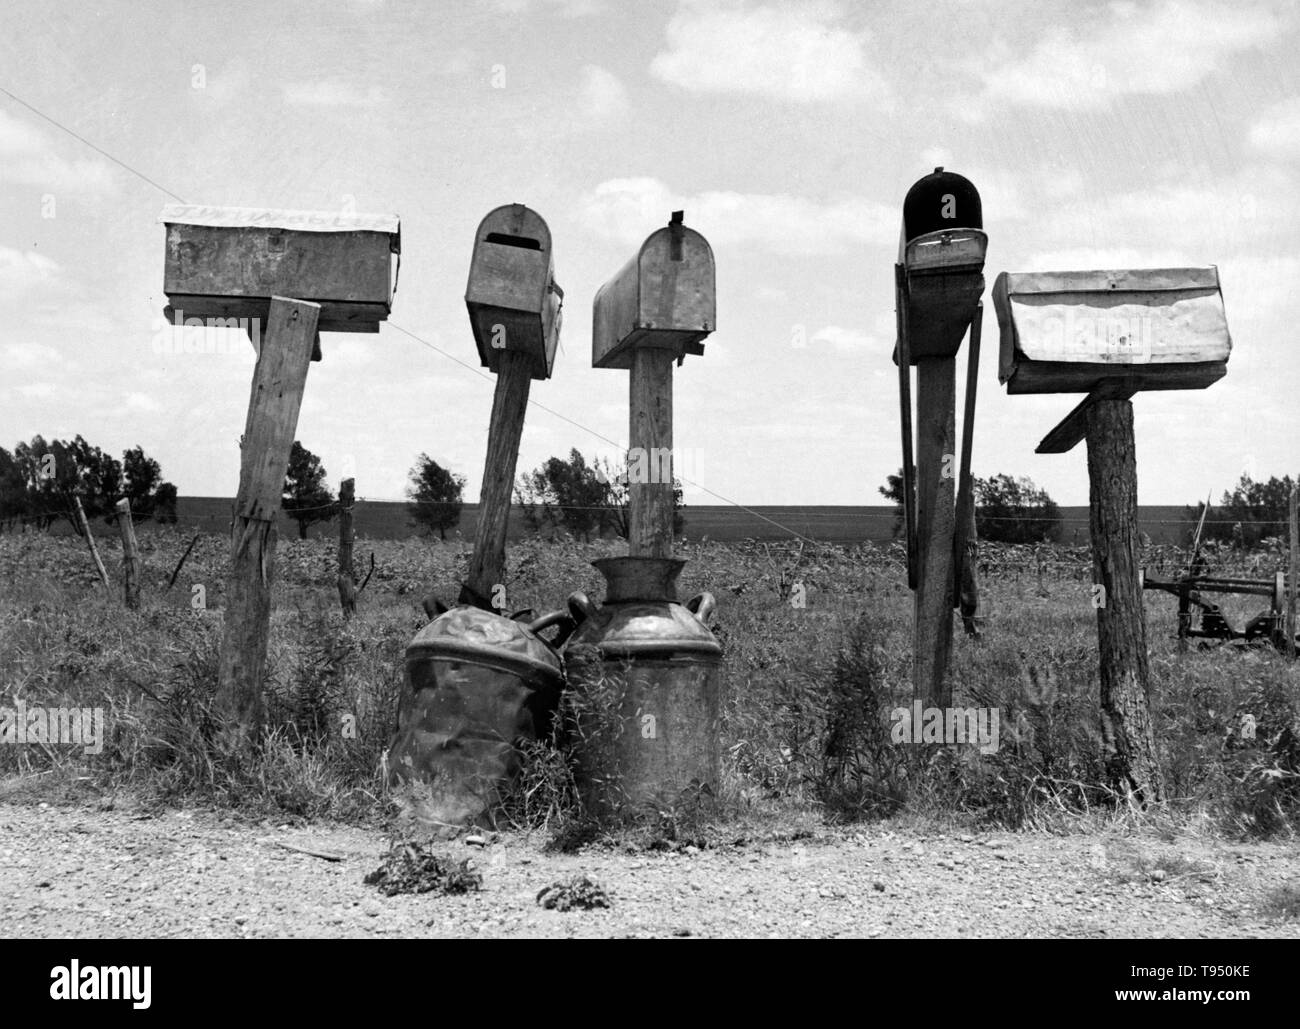 Titel: 'Mail-Boxen in Bell County, Texas. Drei dieser Briefkästen sind nicht in Gebrauch. Die Pächter haben die nach Traktor Landwirtschaft ersetzt worden." Vor der Einführung des ländlichen Kostenlose Lieferung (RFD) von der Post im Jahr 1896, viele ländliche Bewohner keinen Zugriff auf die e-mail hatte, es sei denn Sie sie in einem Postamt viele Meilen entfernt von ihren Häusern gesammelt oder angestellt, ein eigenes Unternehmen zu liefern. Stockfoto